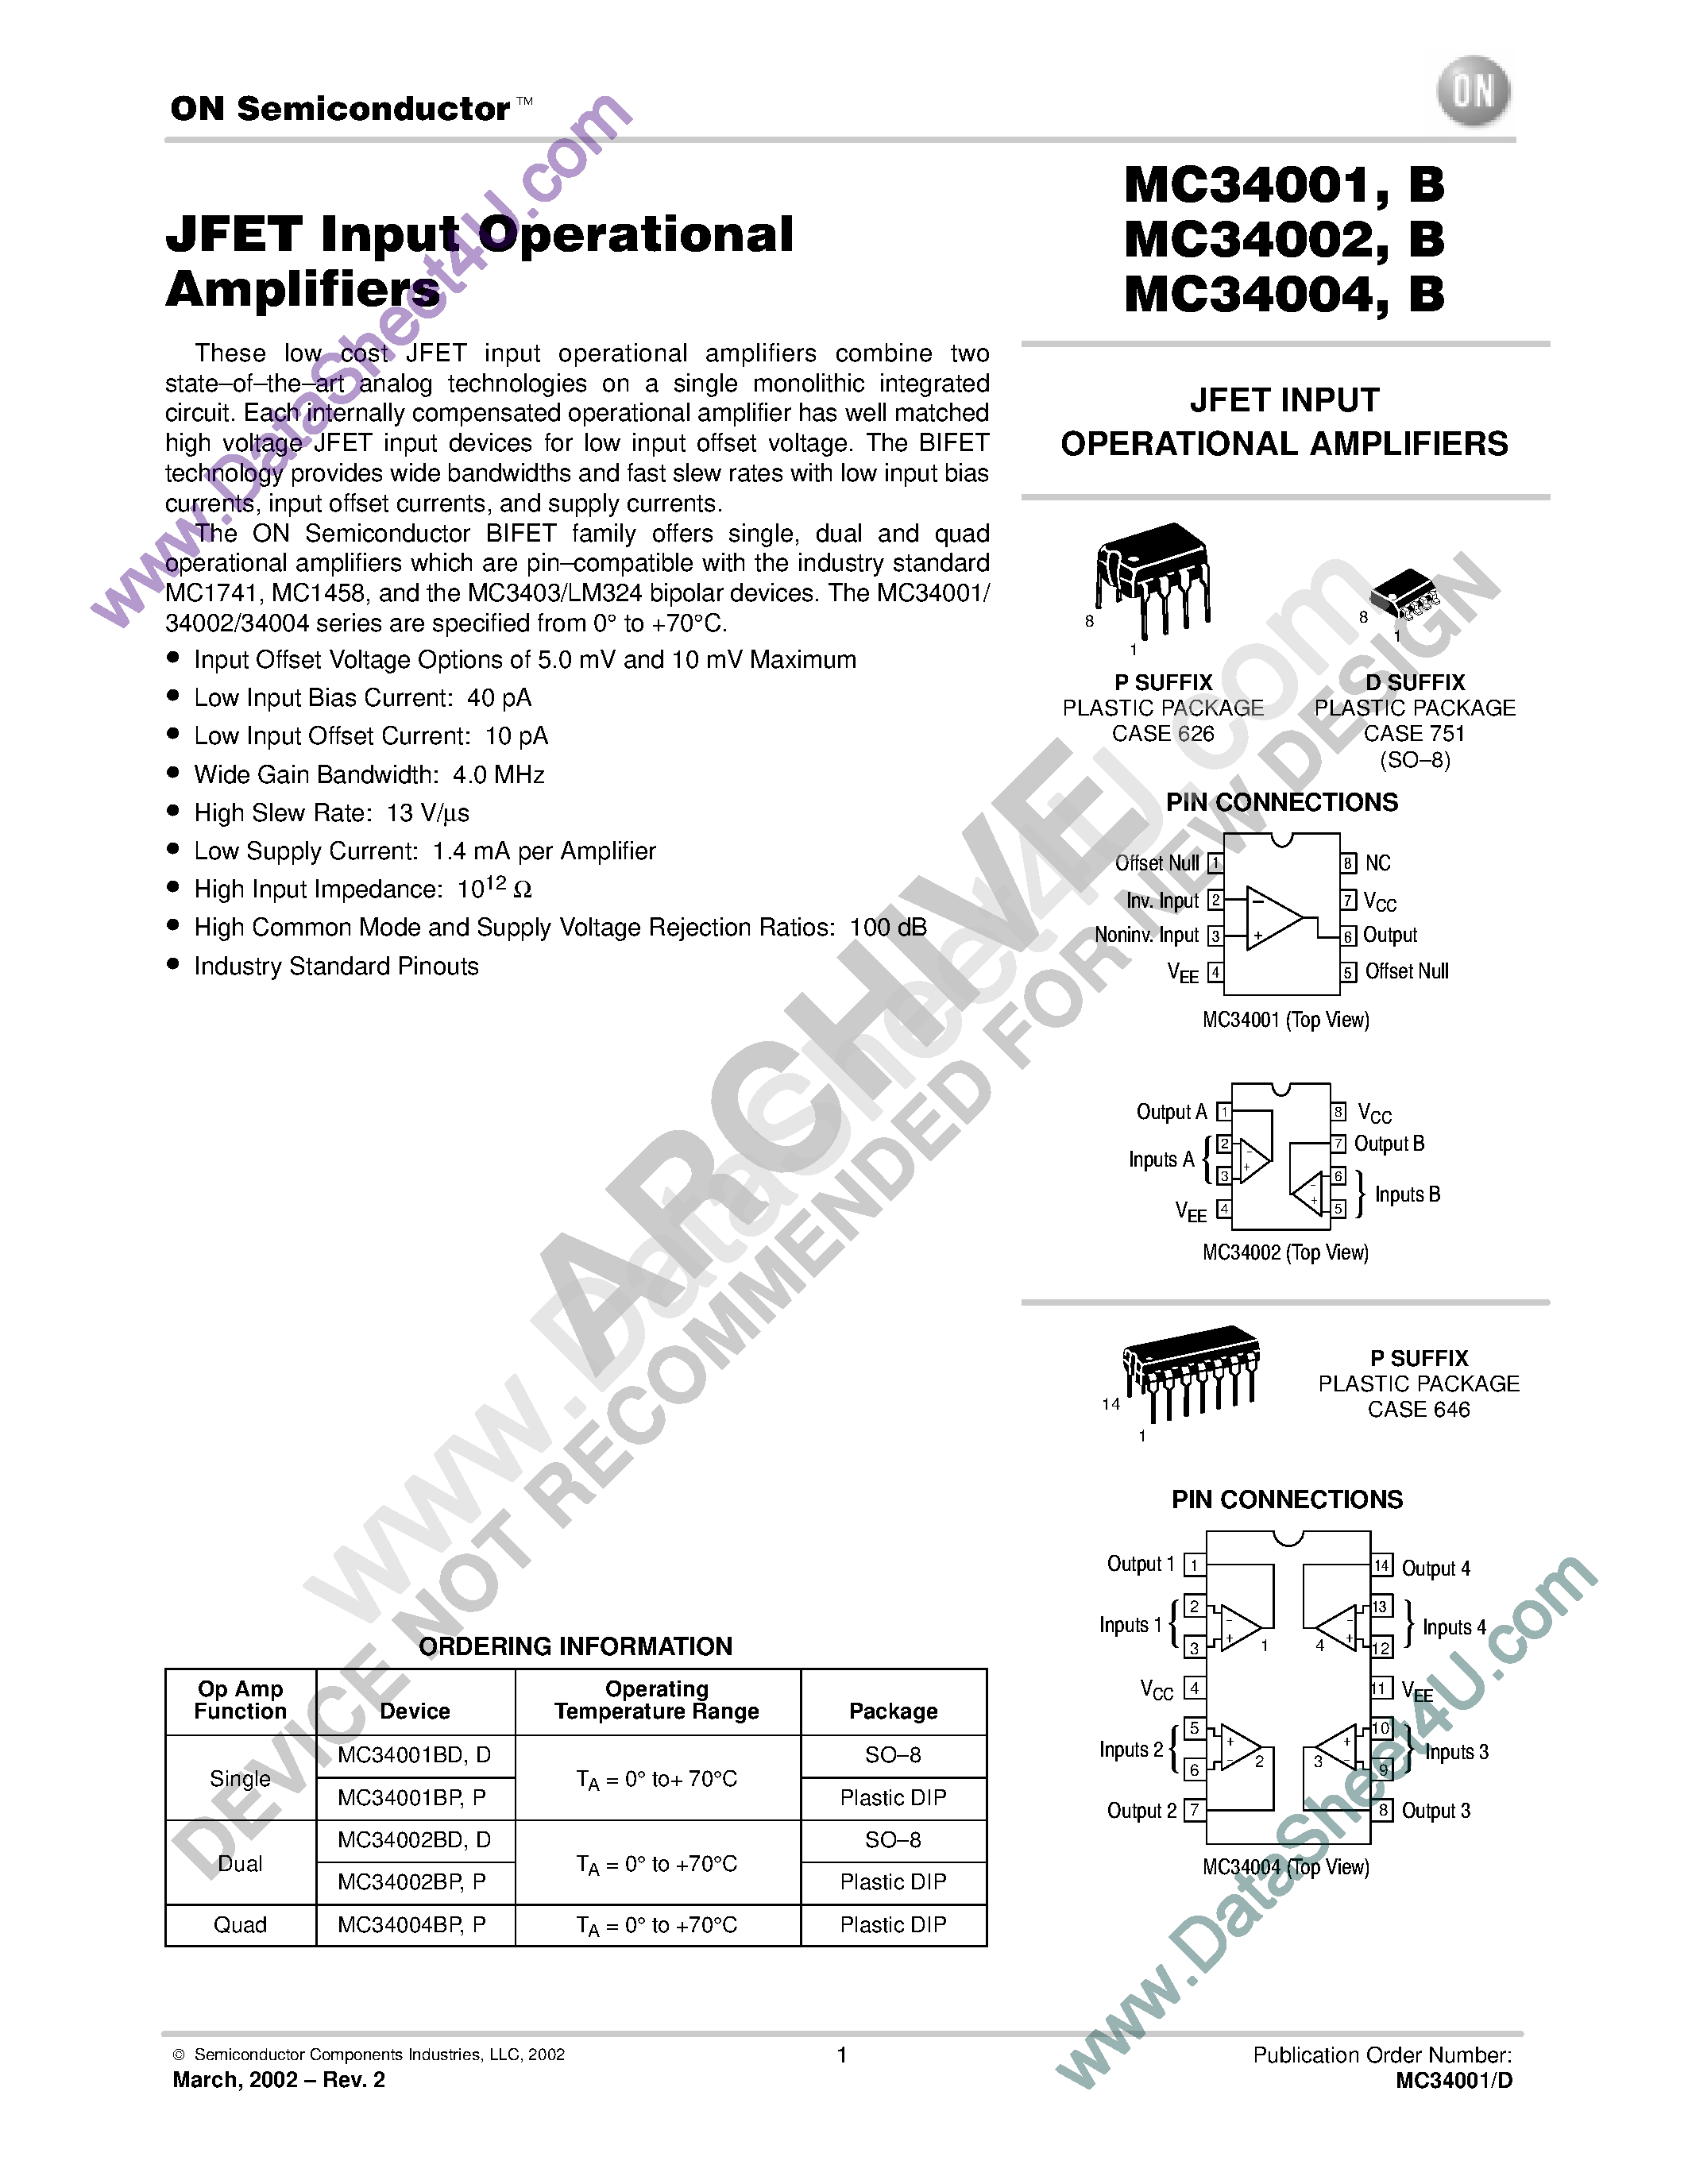 Datasheet MC34001 - (MC34001x - MC34004x) JFET INPUT OPERATIONAL AMPLIFIERS page 1